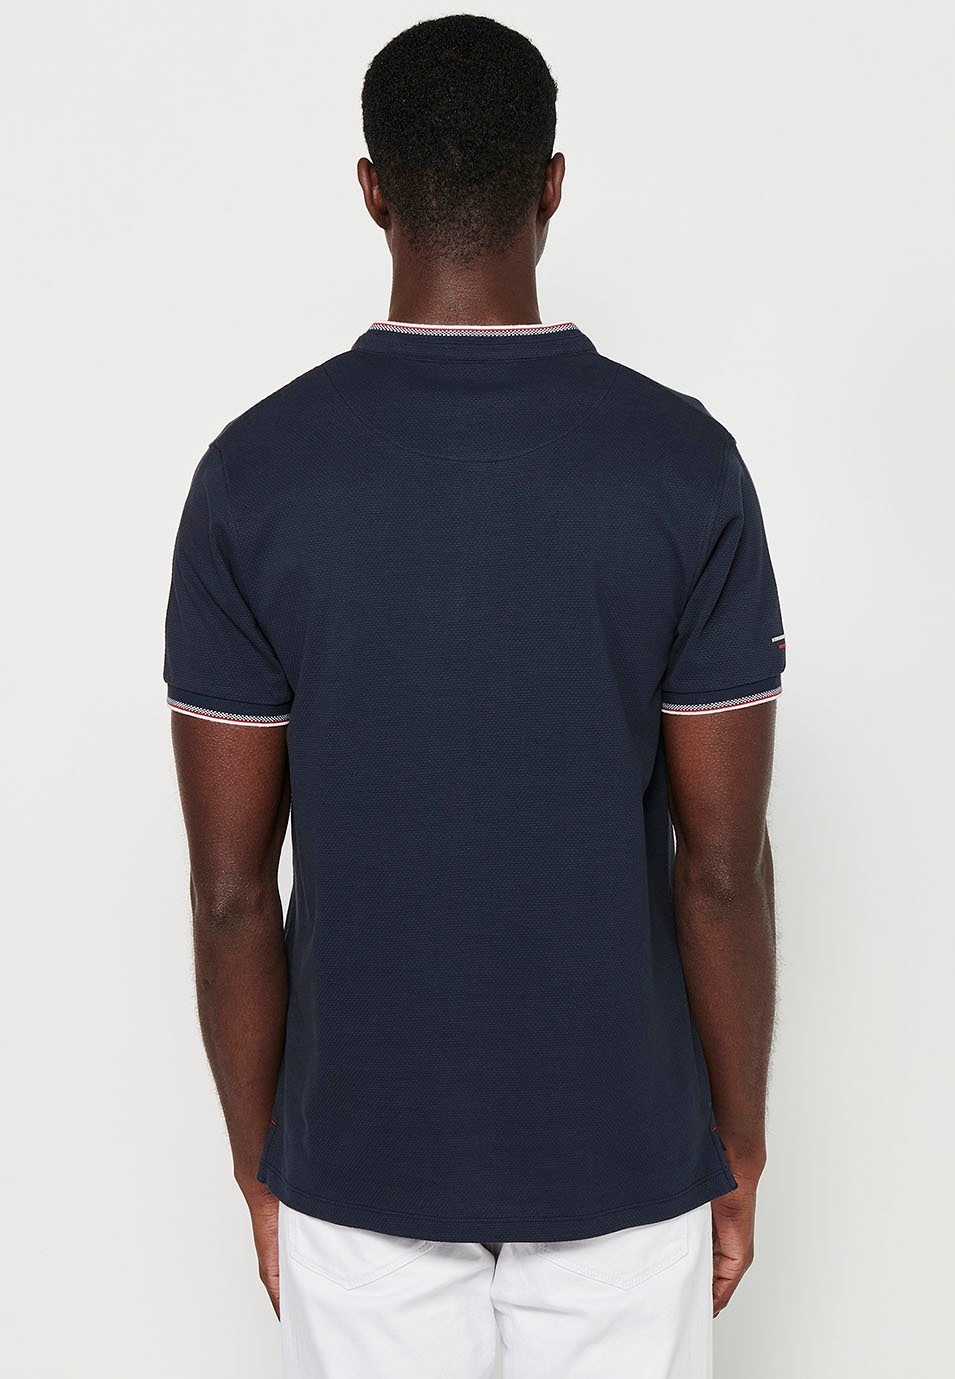 Kurzärmeliges Baumwoll-Poloshirt mit geripptem Finish, Rundhalsausschnitt, geknöpfter Öffnung und strukturierten Seitenschlitzen in der Farbe Marineblau für Herren 7